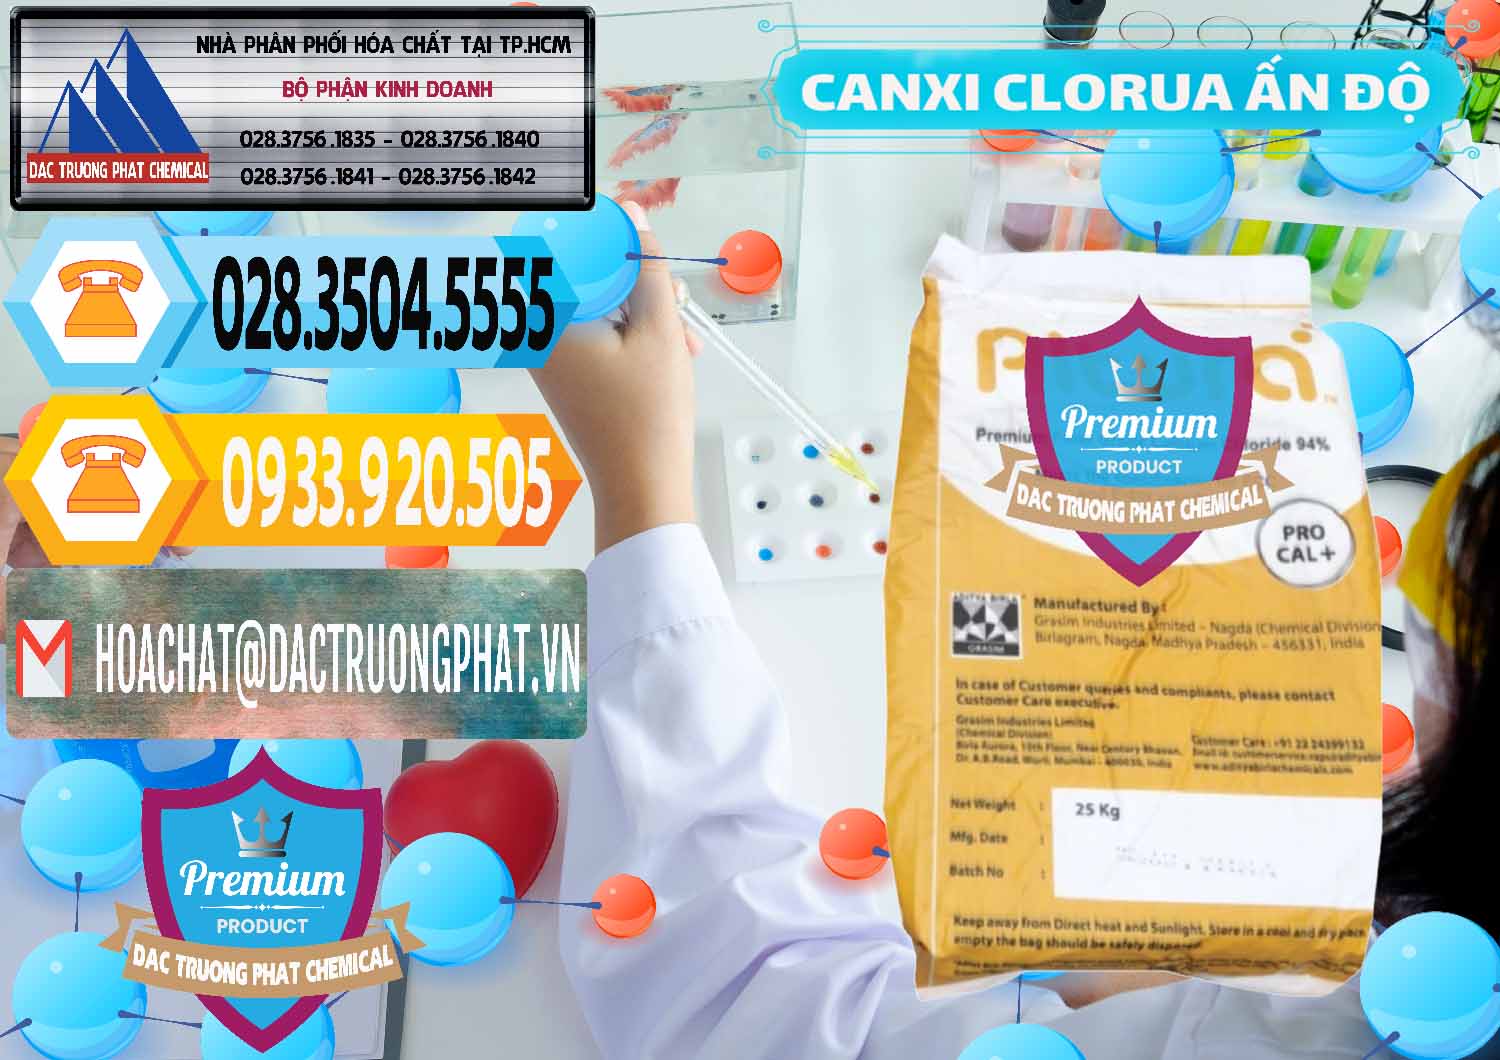 Nơi chuyên cung ứng ( bán ) CaCl2 – Canxi Clorua Food Grade Altura Aditya Birla Grasim Ấn Độ India - 0436 - Công ty phân phối và bán hóa chất tại TP.HCM - hoachattayrua.net